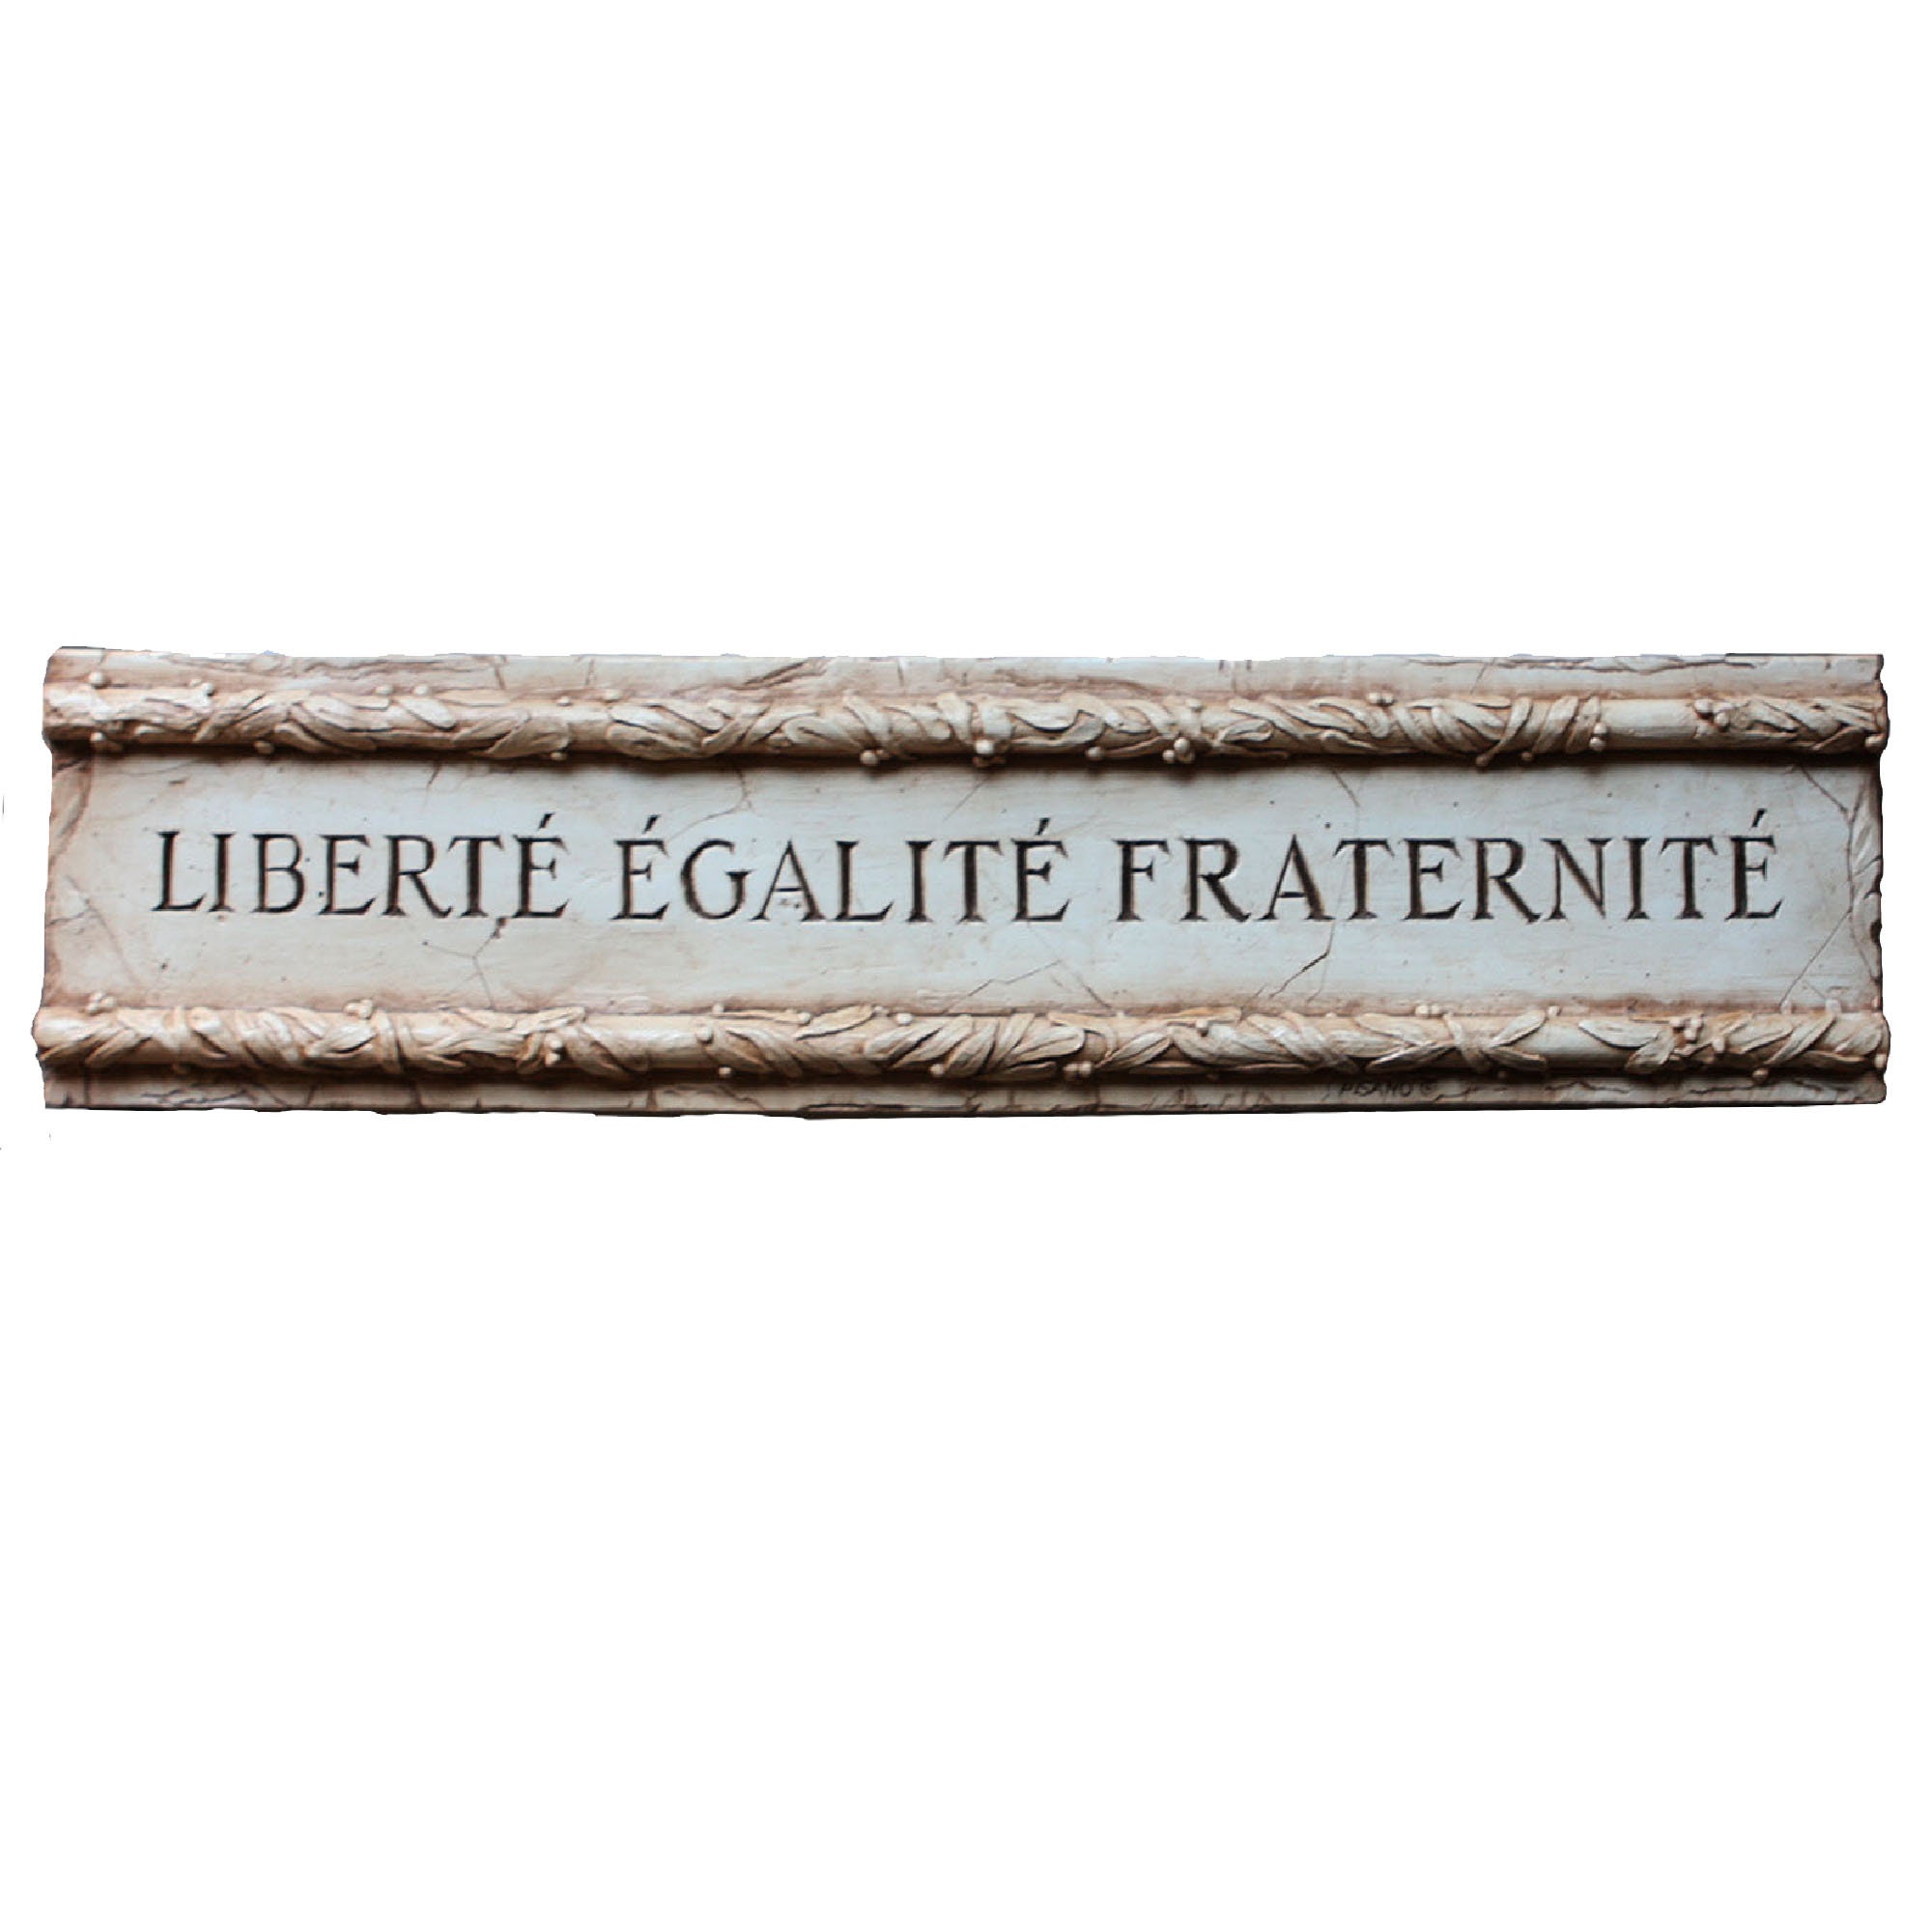 Liberté égalité fraternité wall plaque the National motto | Etsy